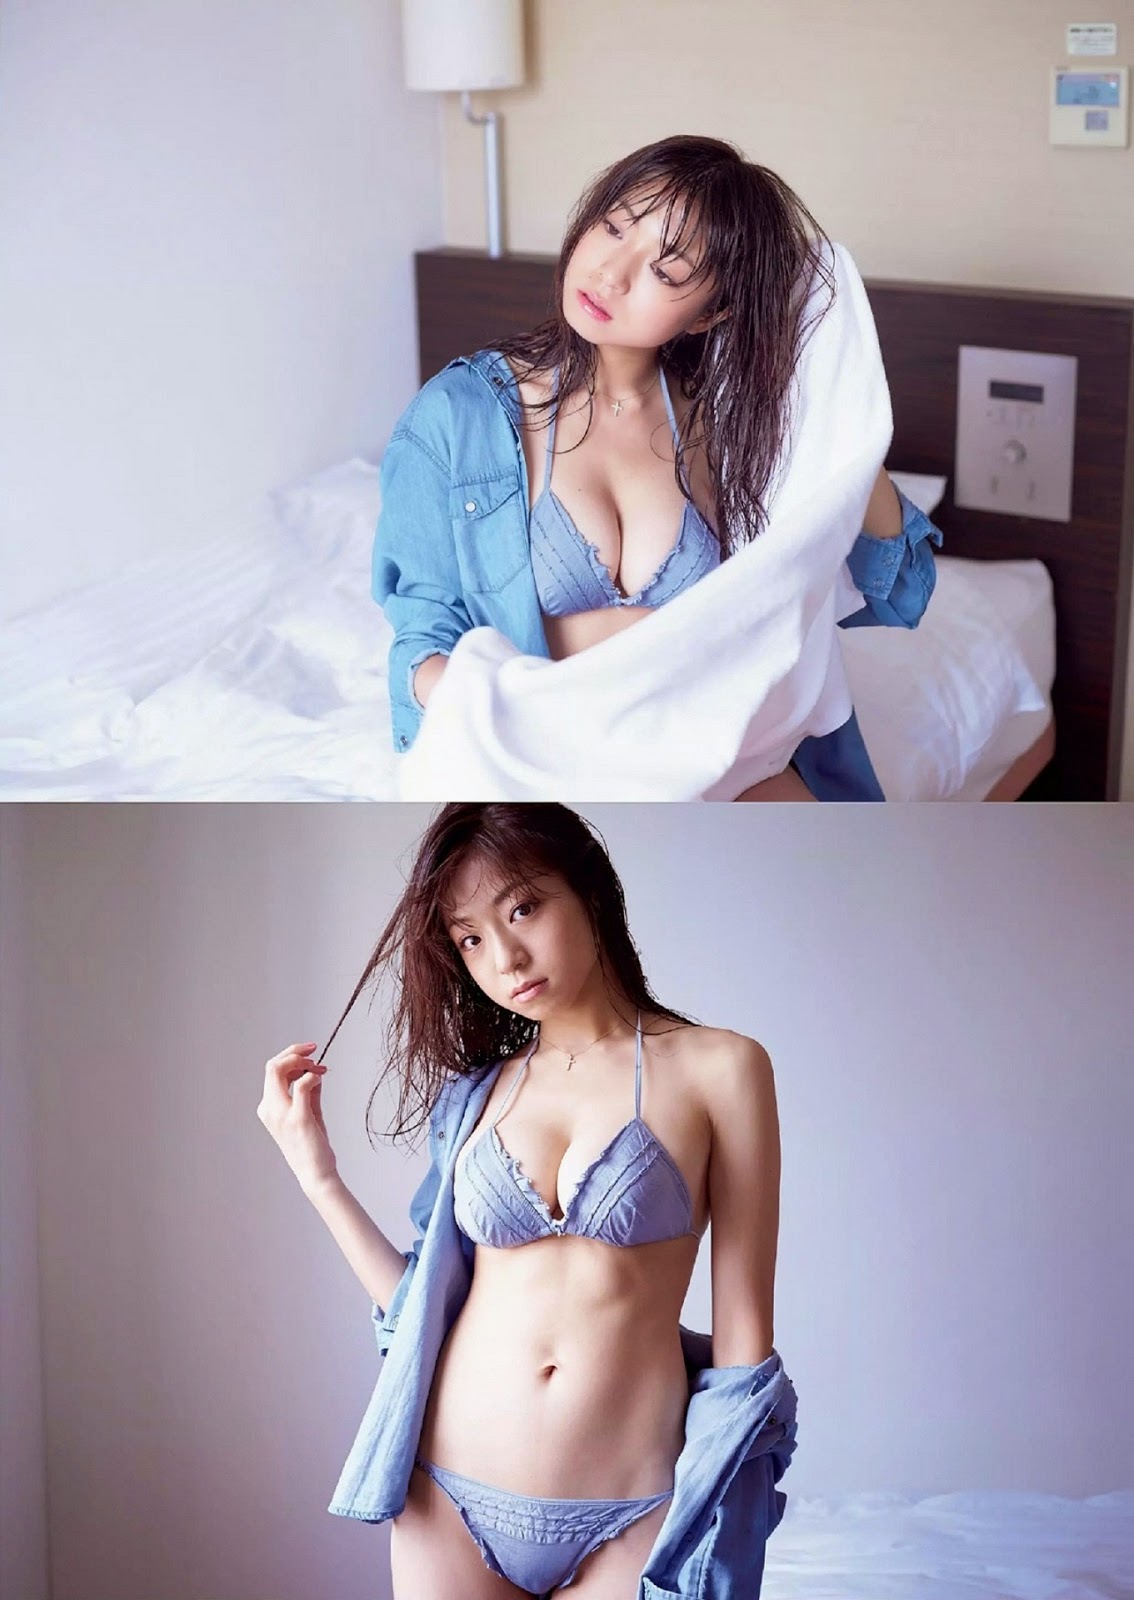 Shizuka Nakamura Weekly Playboy Oct Photos Hot Sexy Beauty